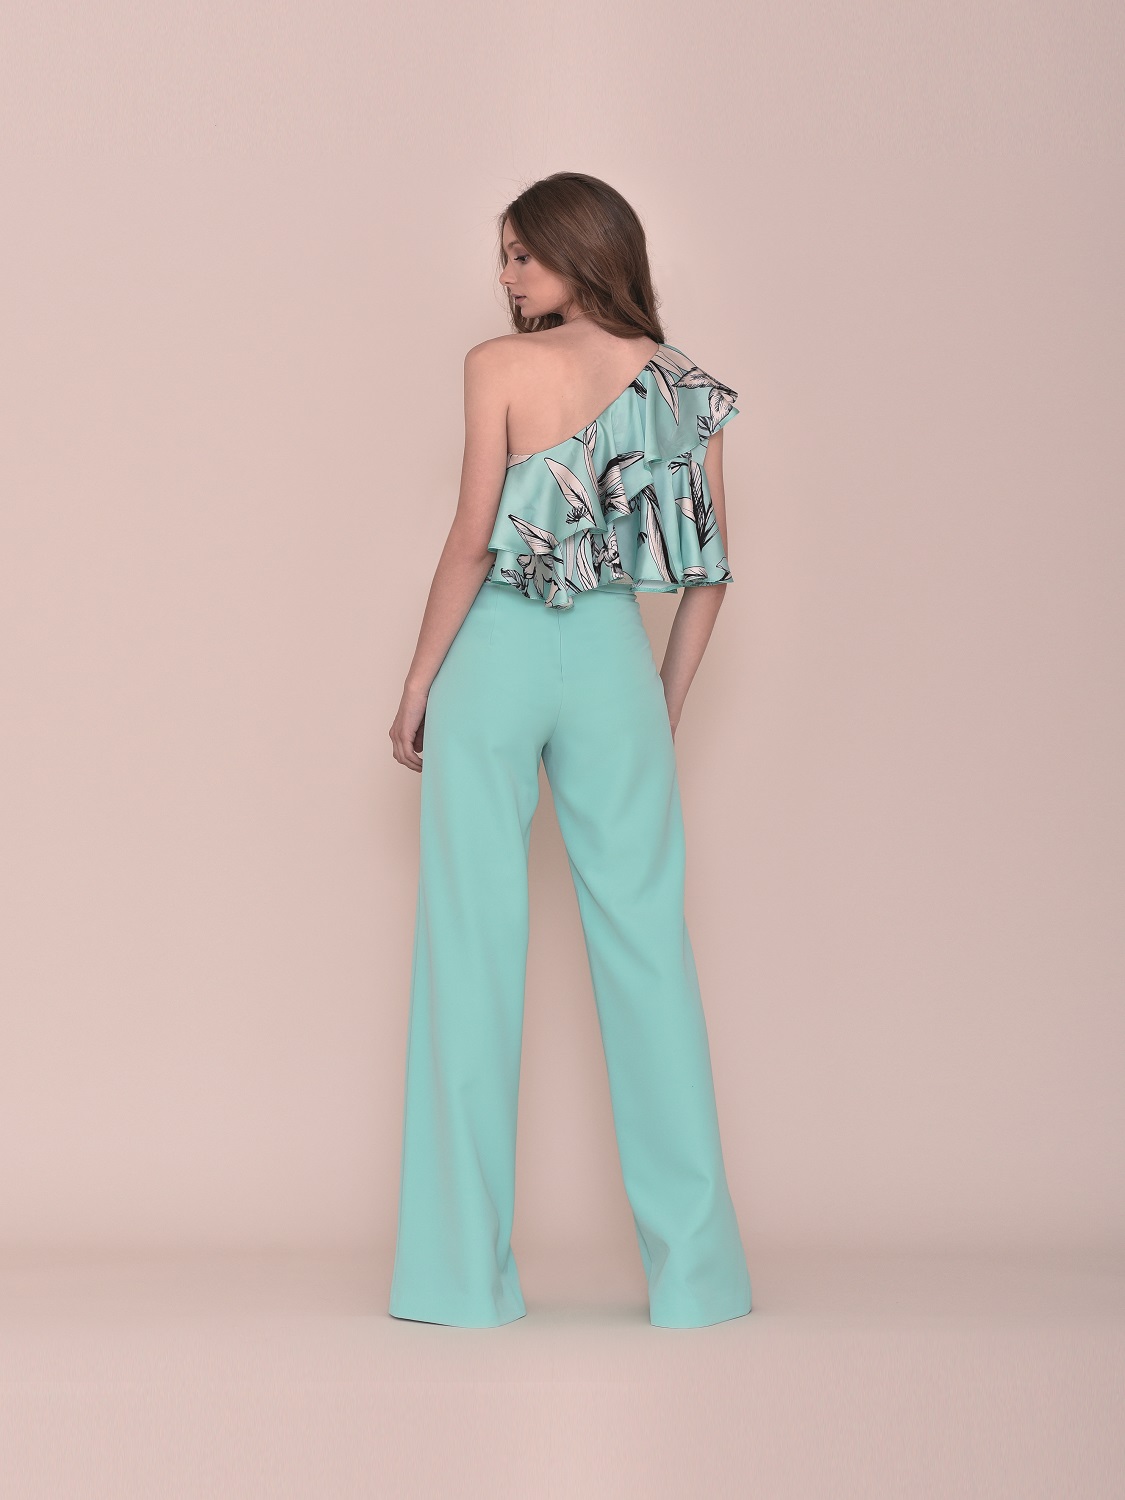 Conjunto pantalón en turquesa con top floral verano 2020